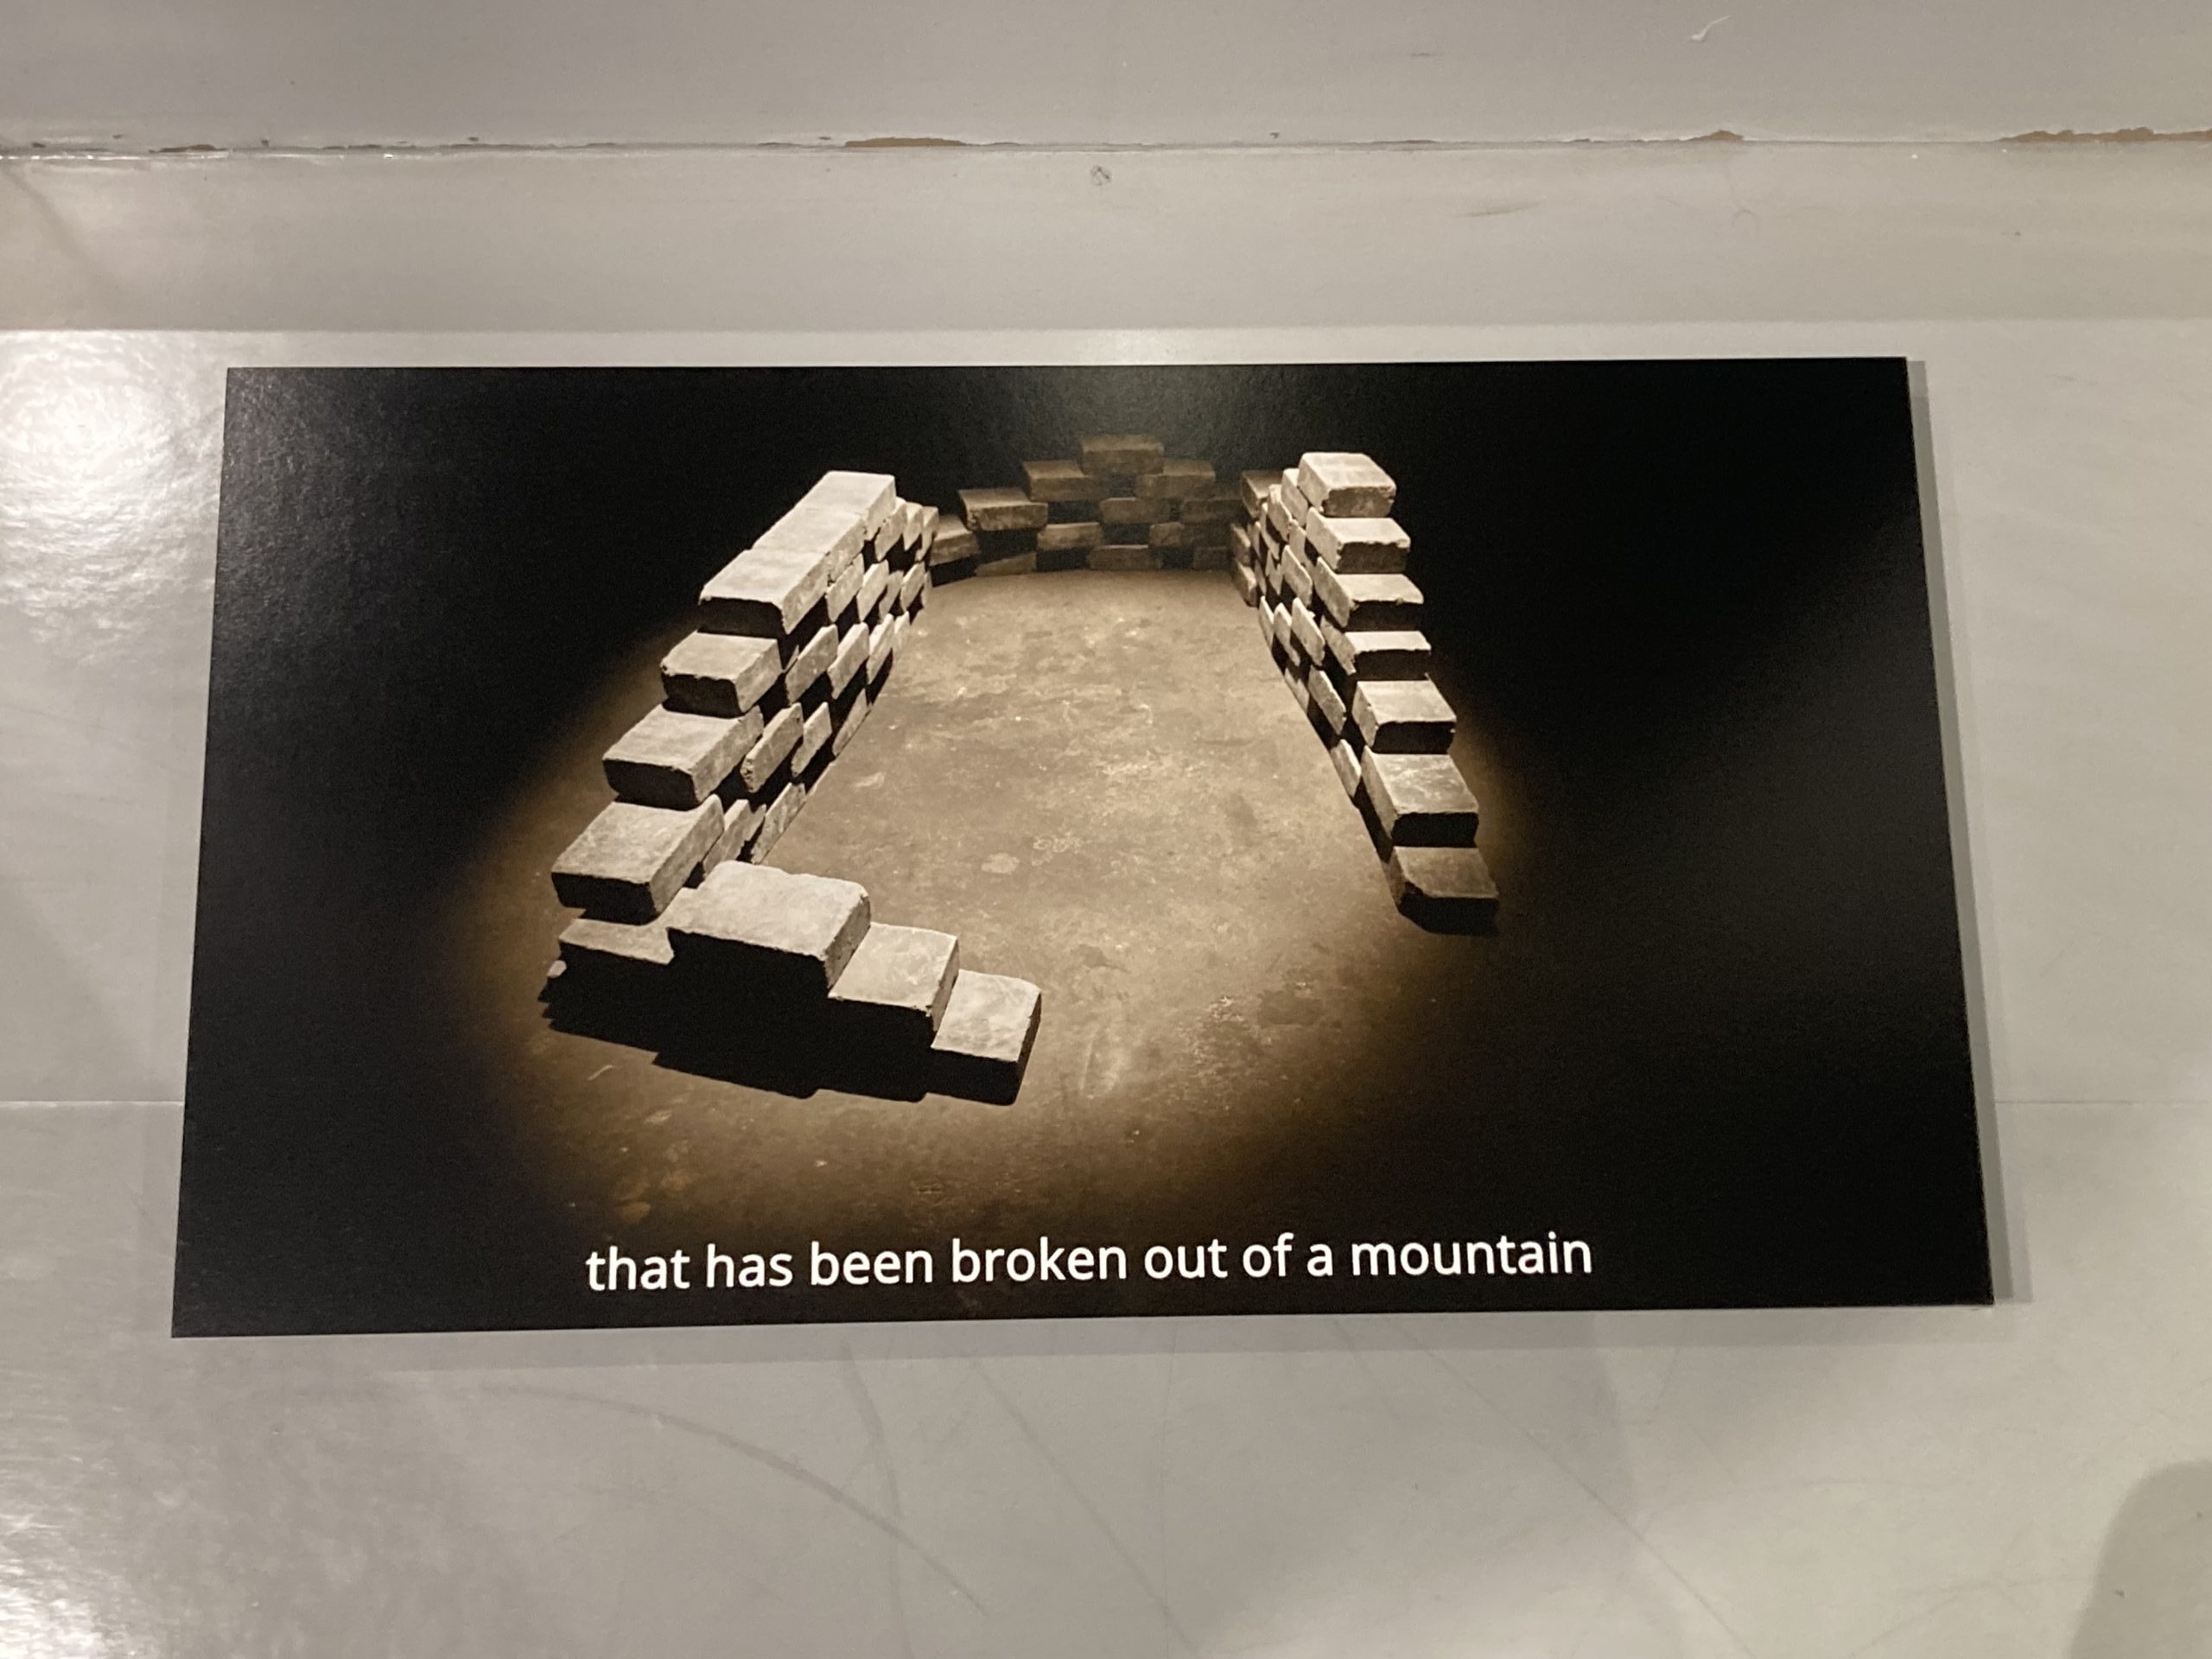 Eine zerstörte Steinmauer von oben mit der Schrift "that has been broken out of a mountain"